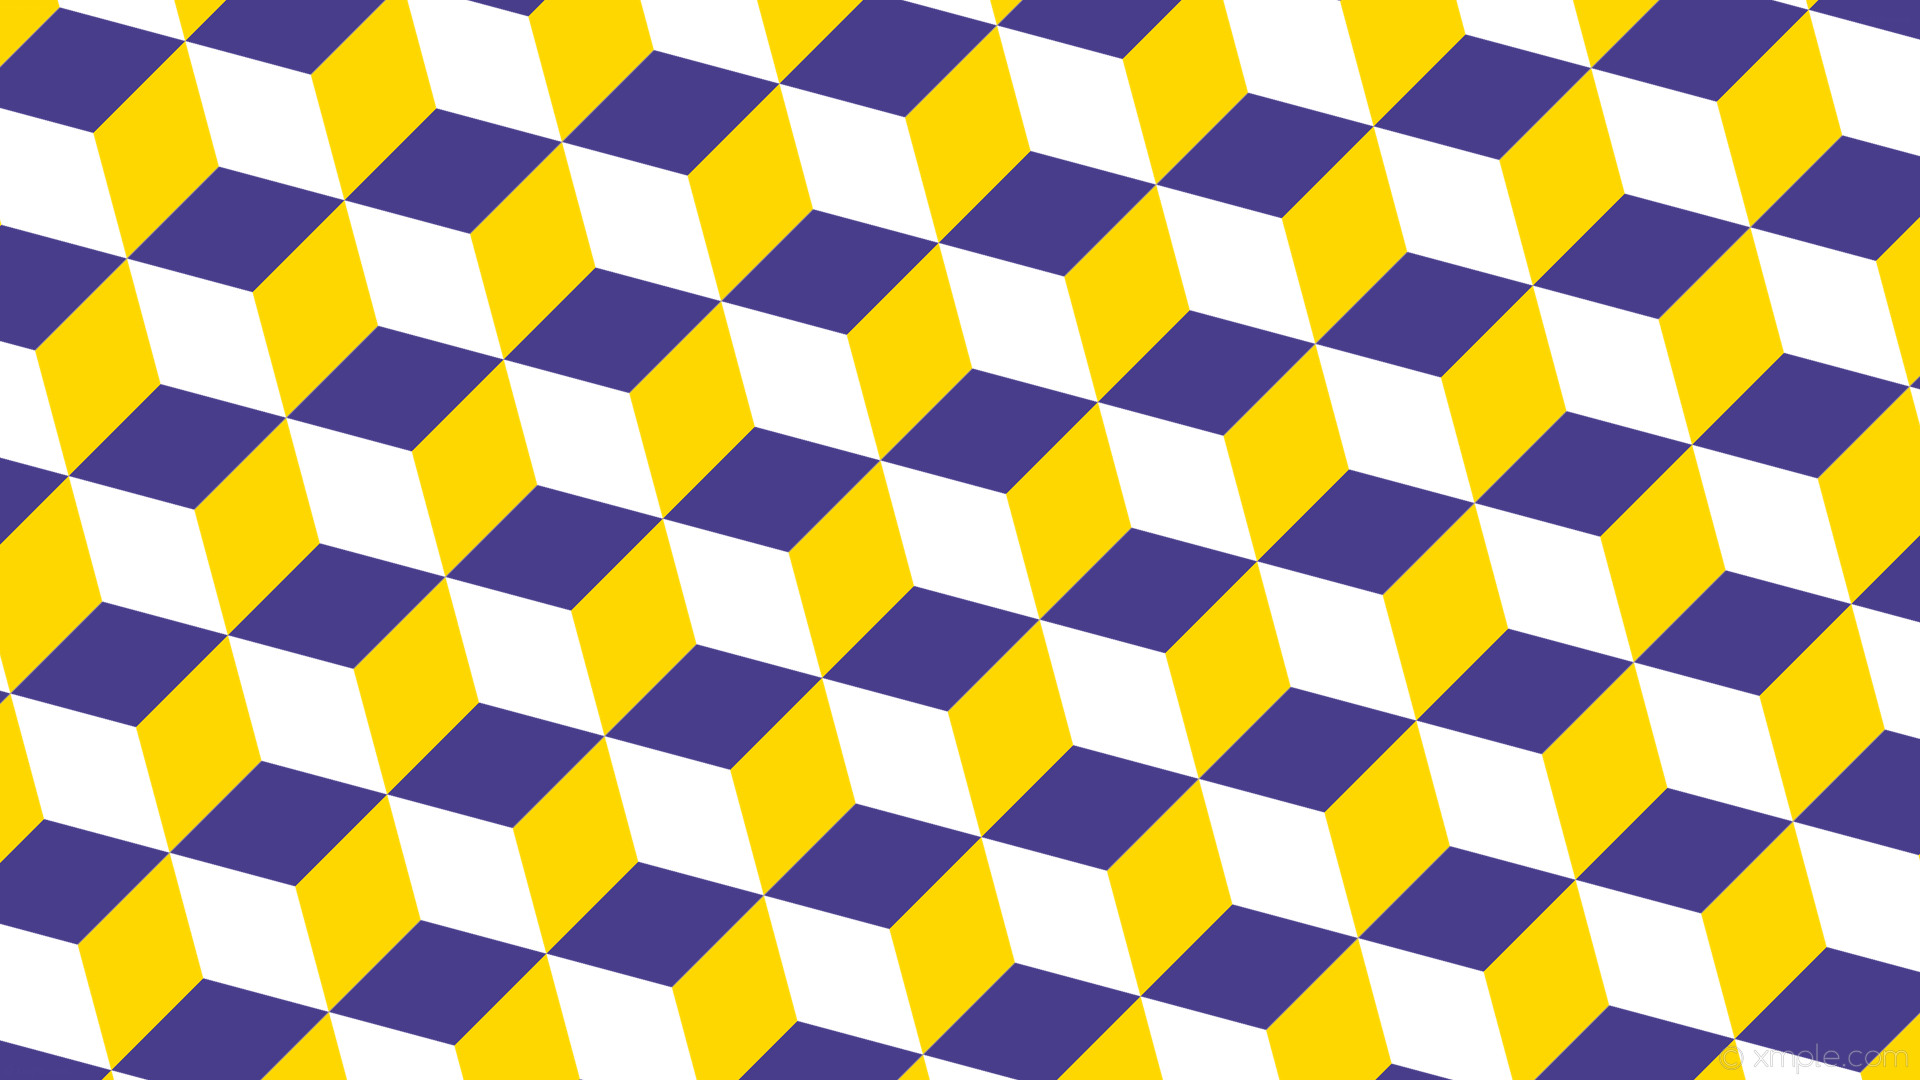 1920x1080 wallpaper yellow 3d cubes purple white gold dark slate blue #ffffff #ffd700  #483d8b